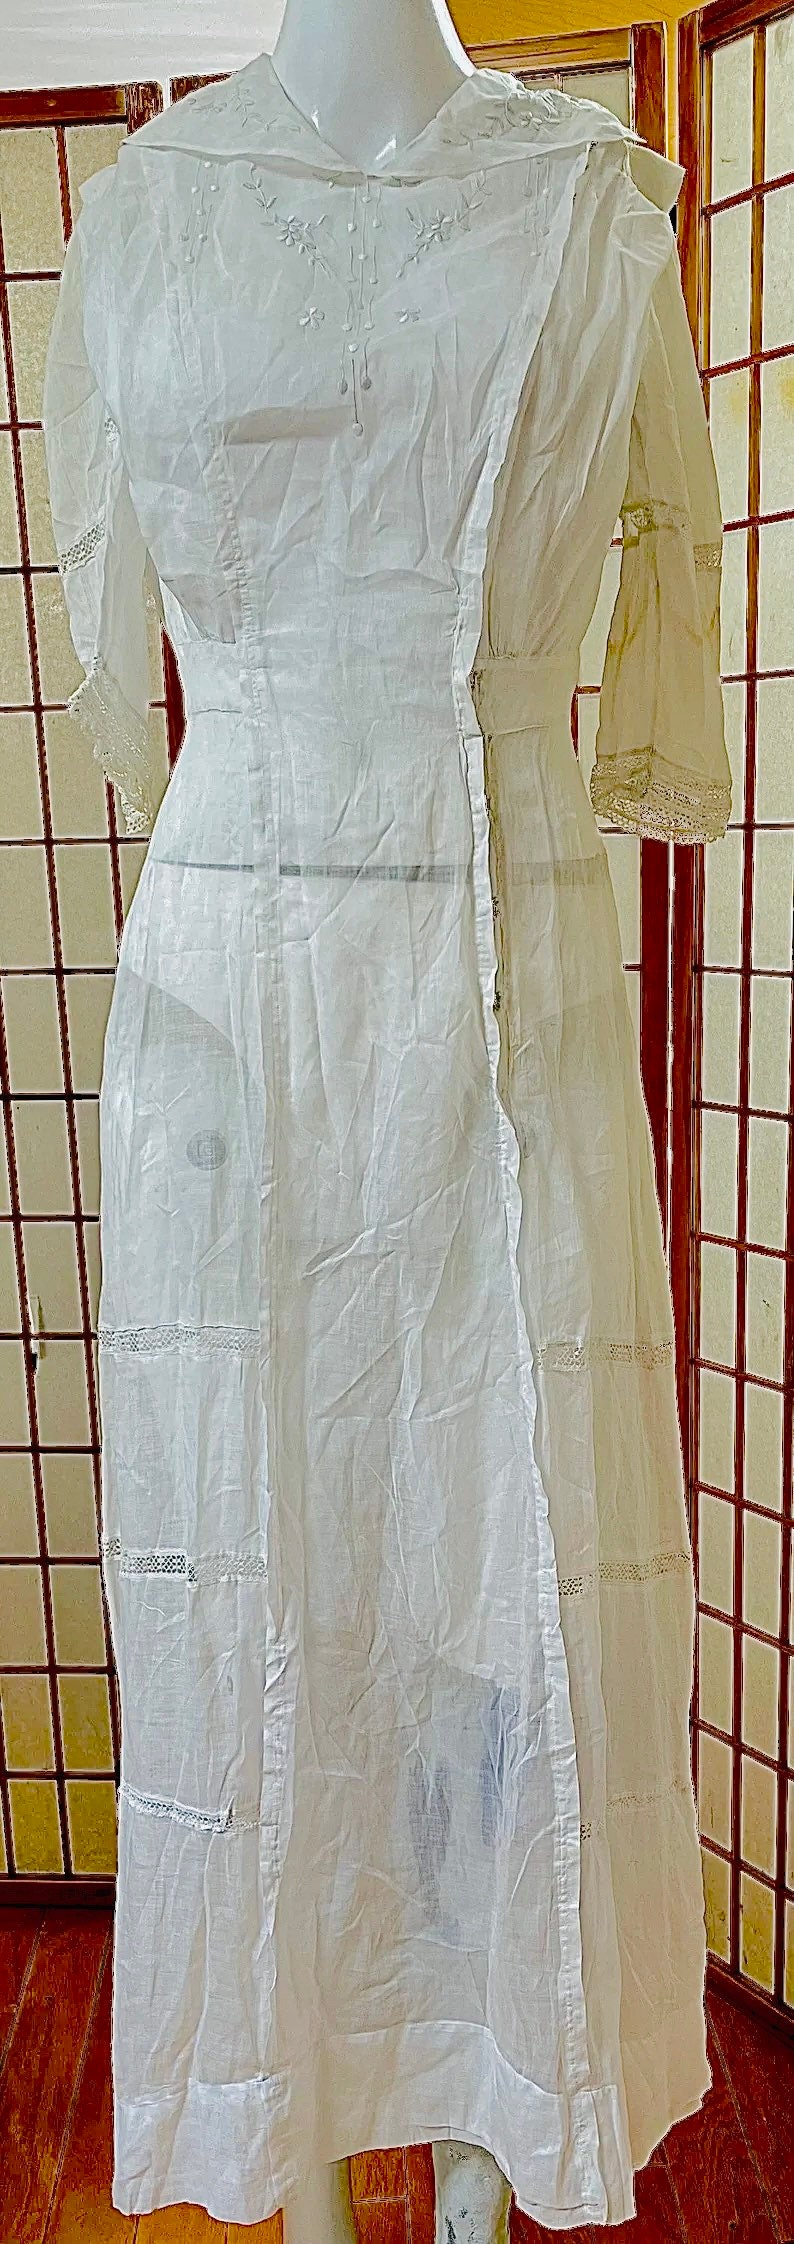 1800s / 1900s Authentic Beautiful White Cotton Ladies Long Dress Edwardian Victorian Regency Era Collectors Piece image 2